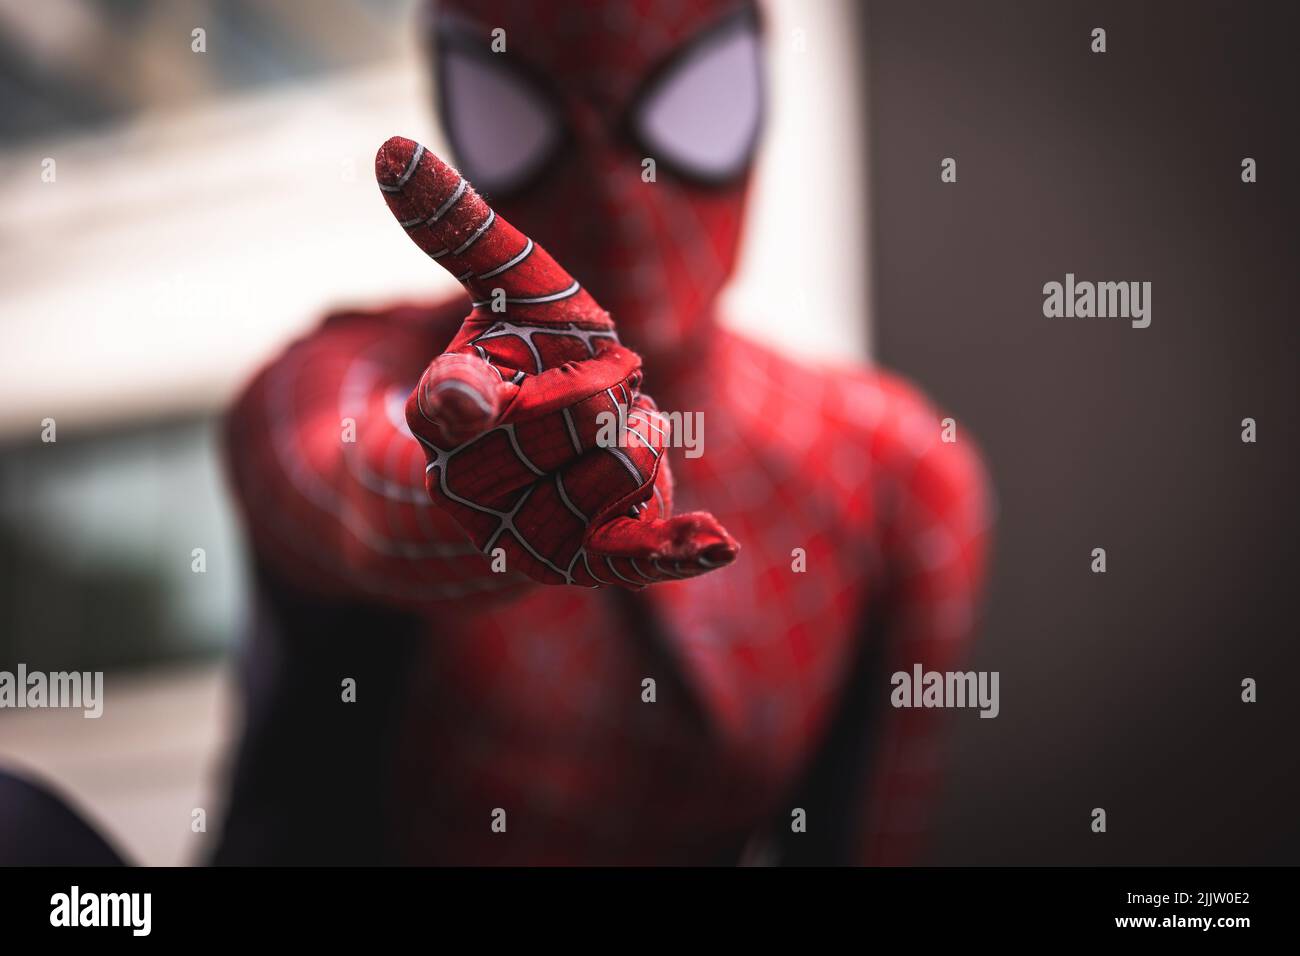 Un gros plan de Spider-Man regardant l'appareil photo avec sa main